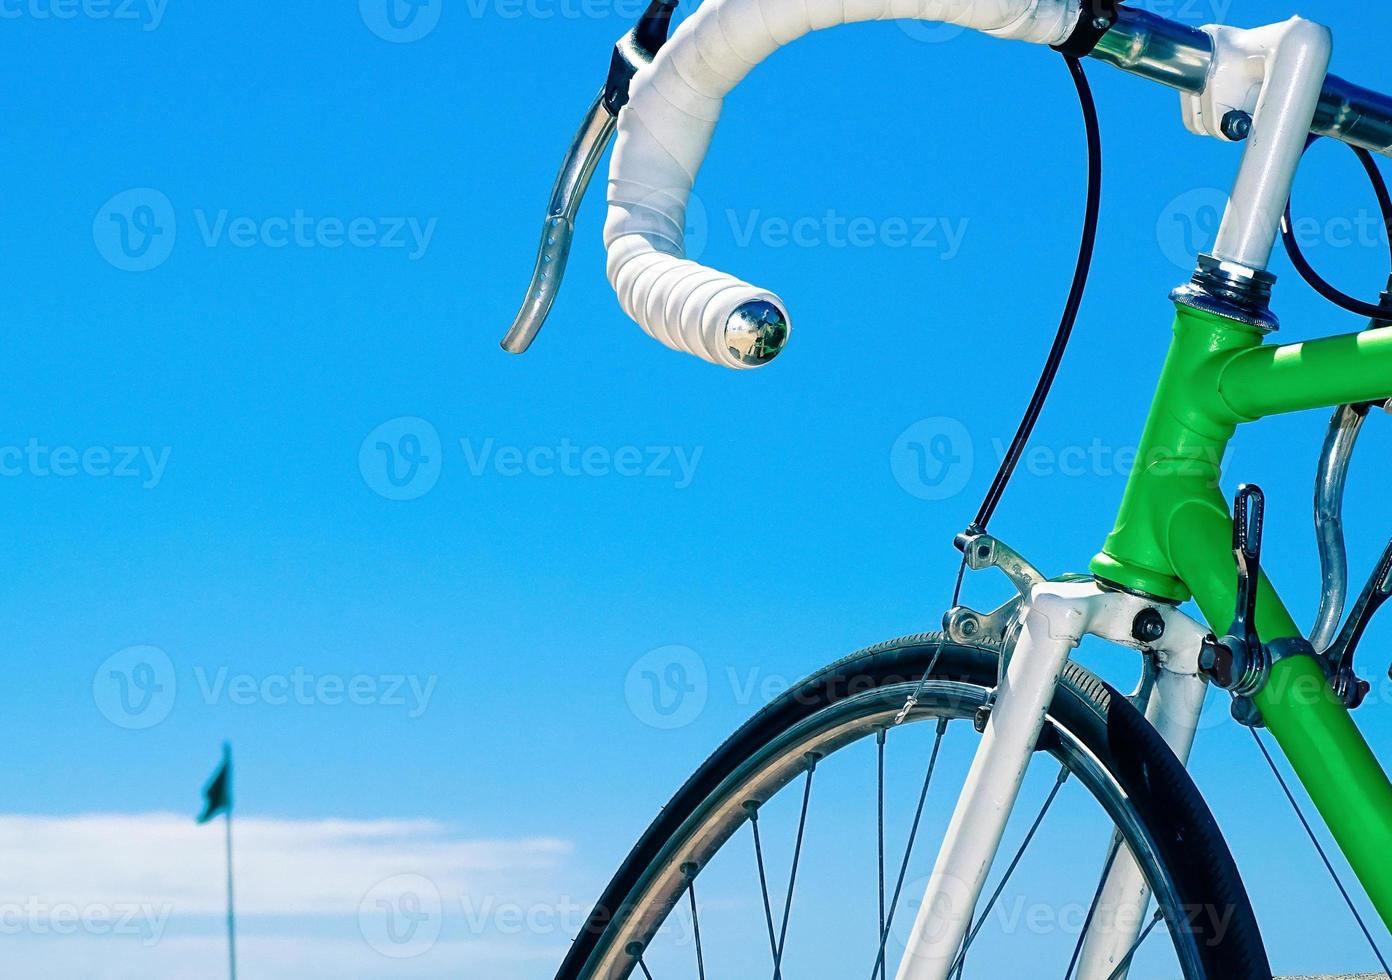 bici da corsa verde con il manubrio bianco su sfondo blu cielo foto